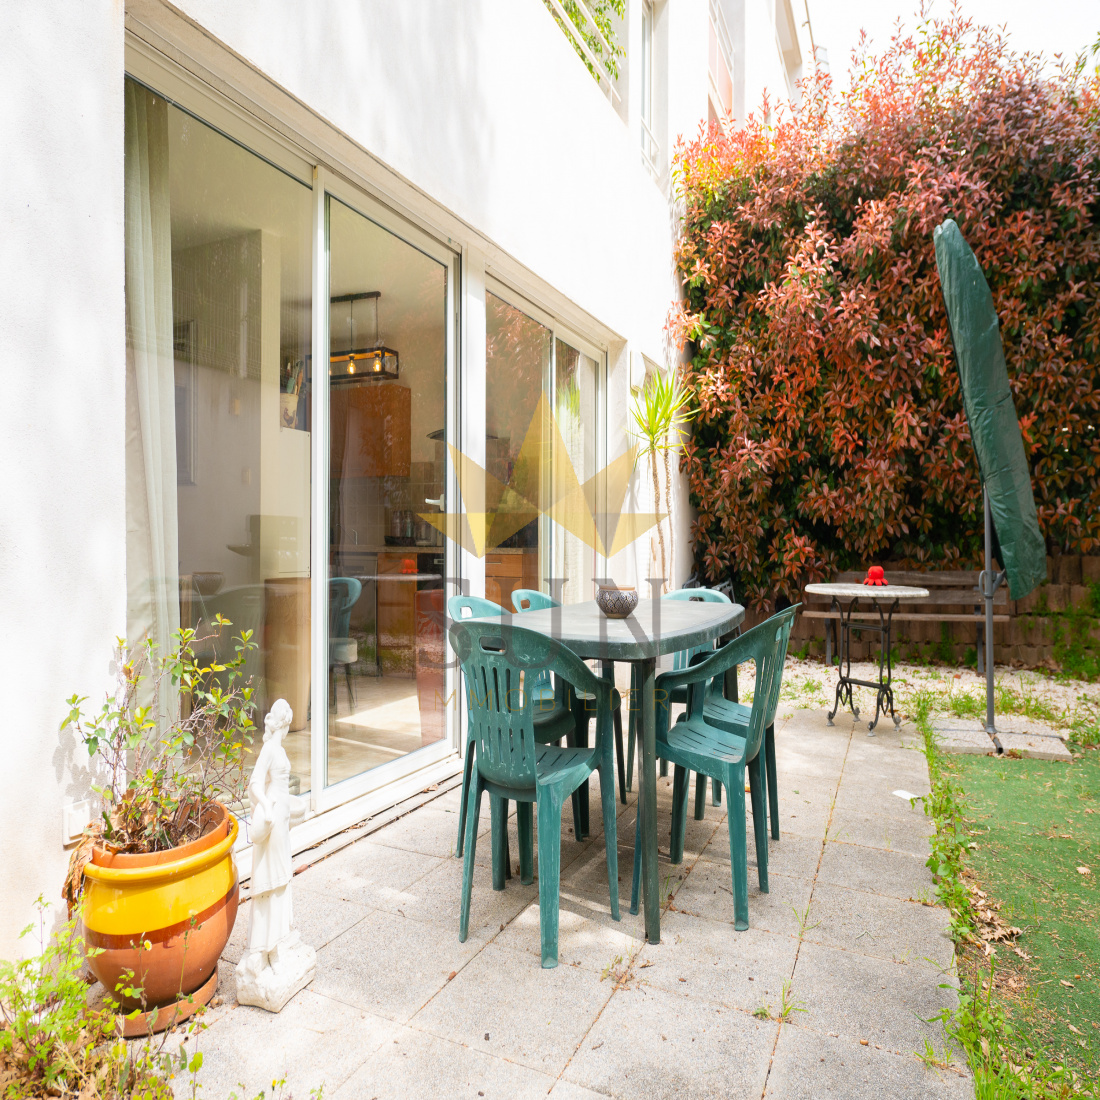 Vente Appartement 76m² 3 Pièces à Toulon (83000) - Sun Immobilier Toulon